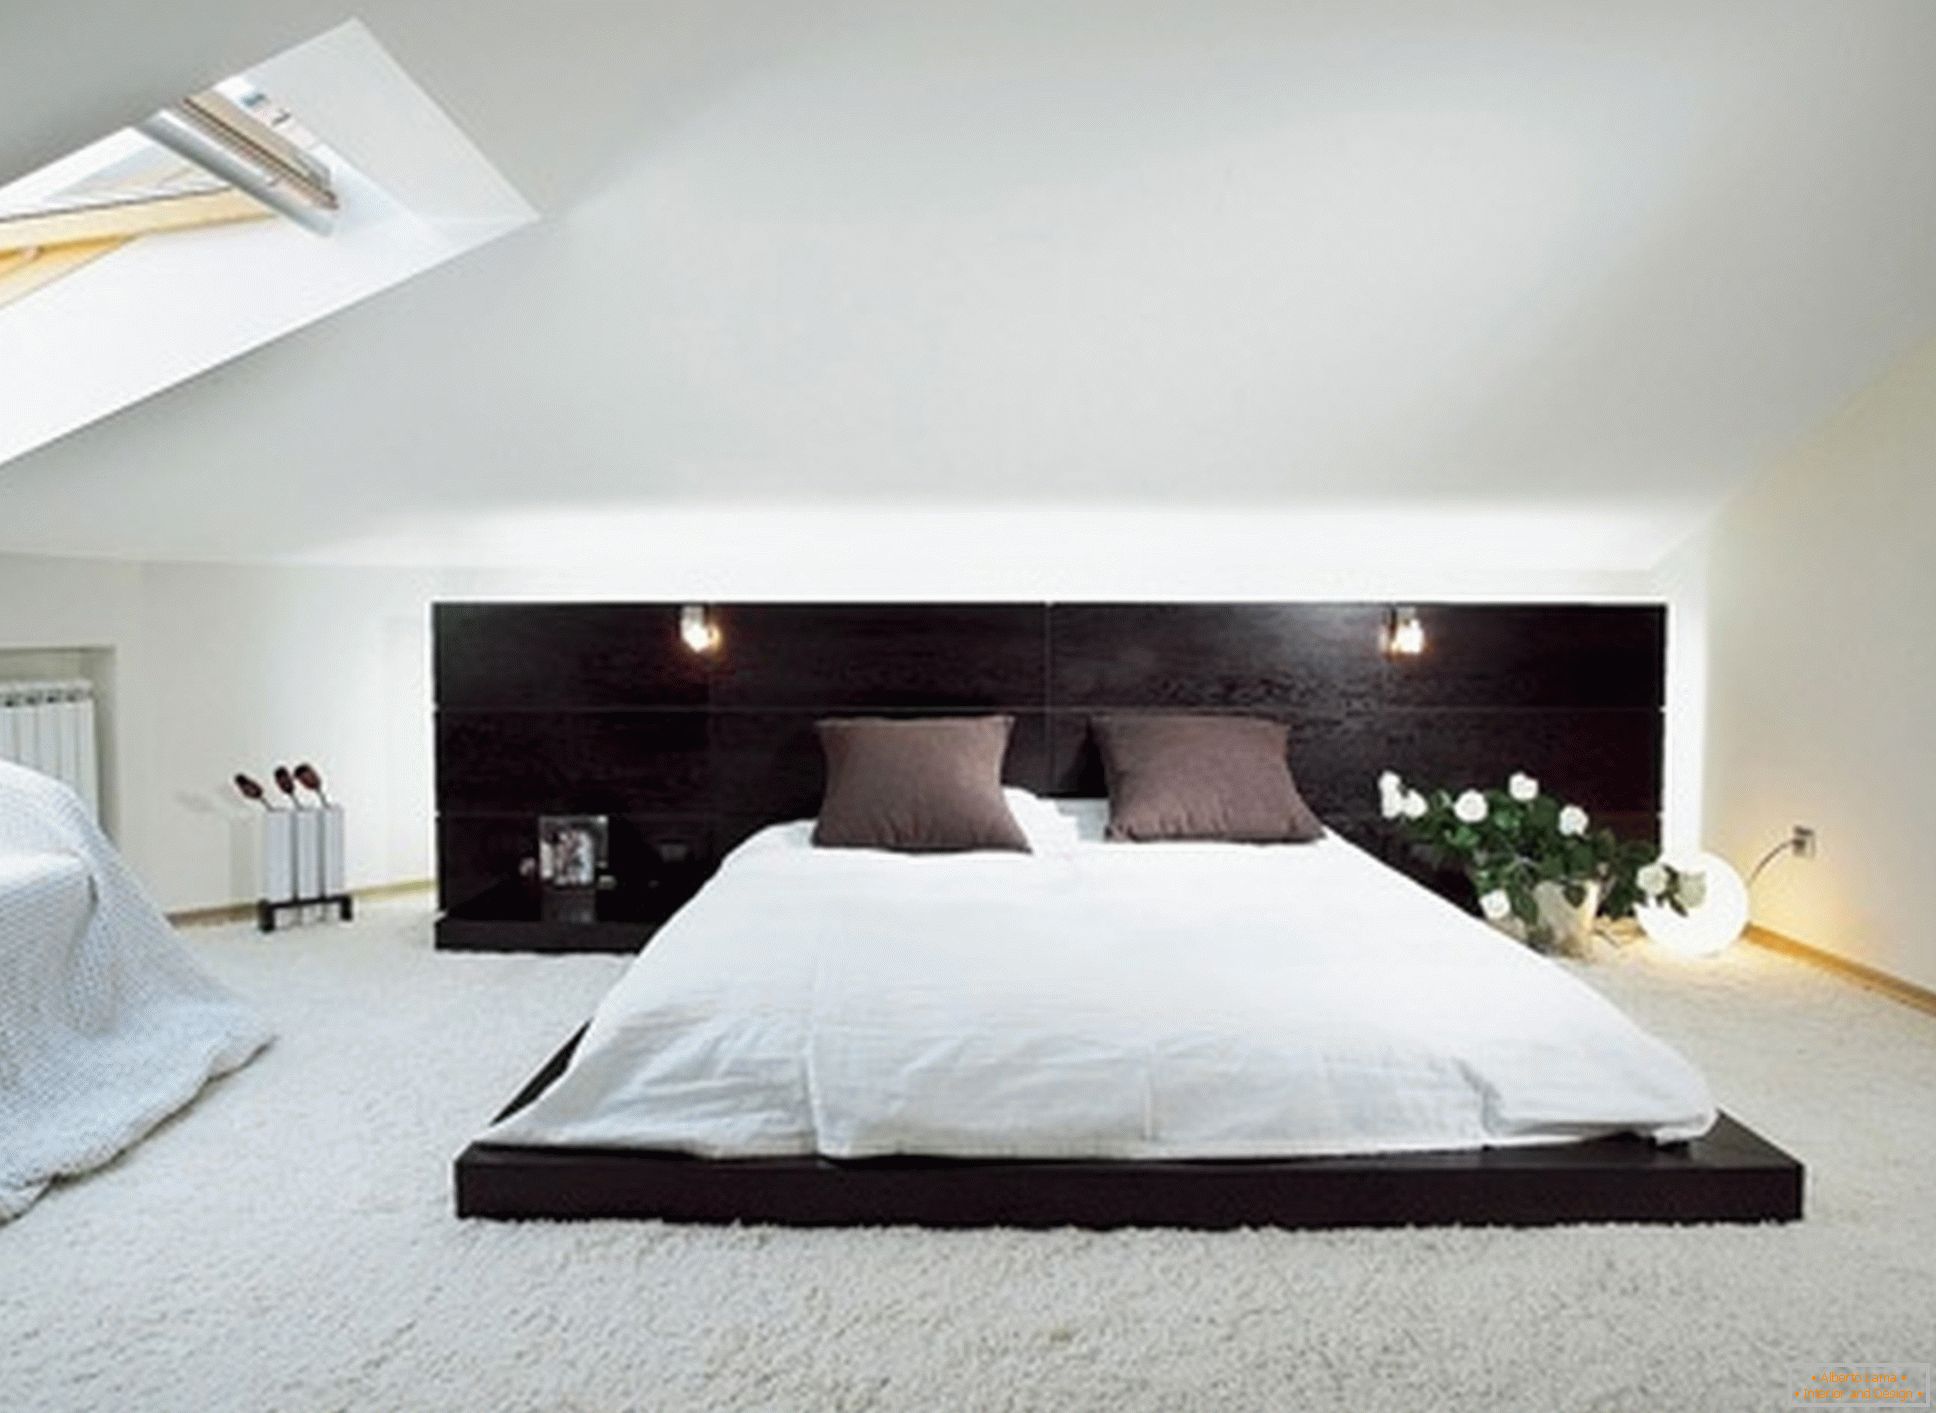 Chambre luxueuse dans le style du minimalisme - exemple d'une conception réussie d'une petite pièce à l'étage mansardé.